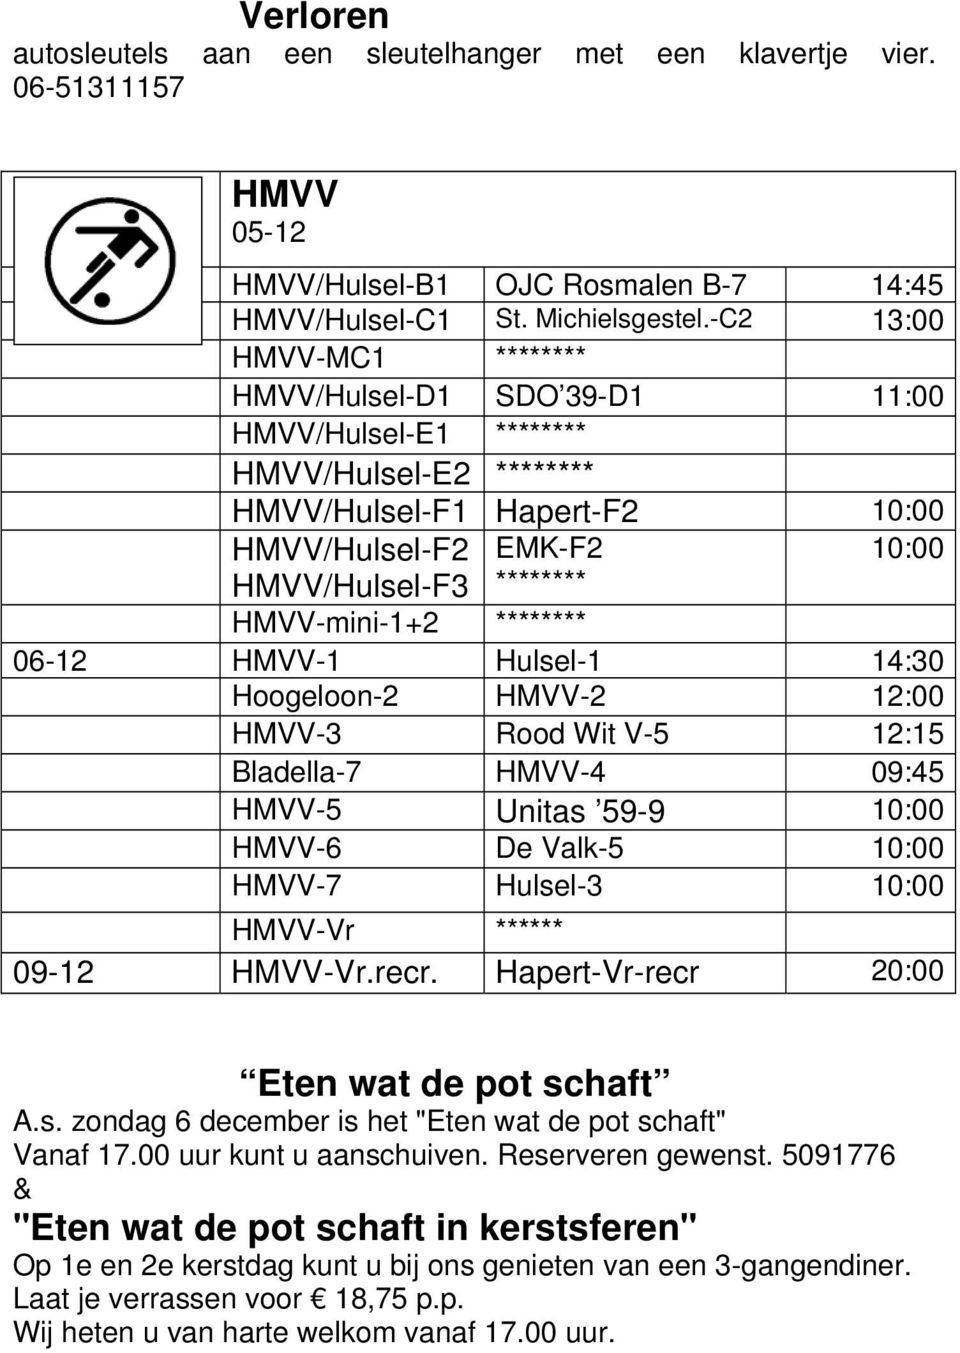 HMVV-mini-1+2 ******** 06-12 HMVV-1 Hulsel-1 14:30 Hoogeloon-2 HMVV-2 12:00 HMVV-3 Rood Wit V-5 12:15 Bladella-7 HMVV-4 09:45 HMVV-5 Unitas 59-9 10:00 HMVV-6 De Valk-5 10:00 HMVV-7 Hulsel-3 10:00